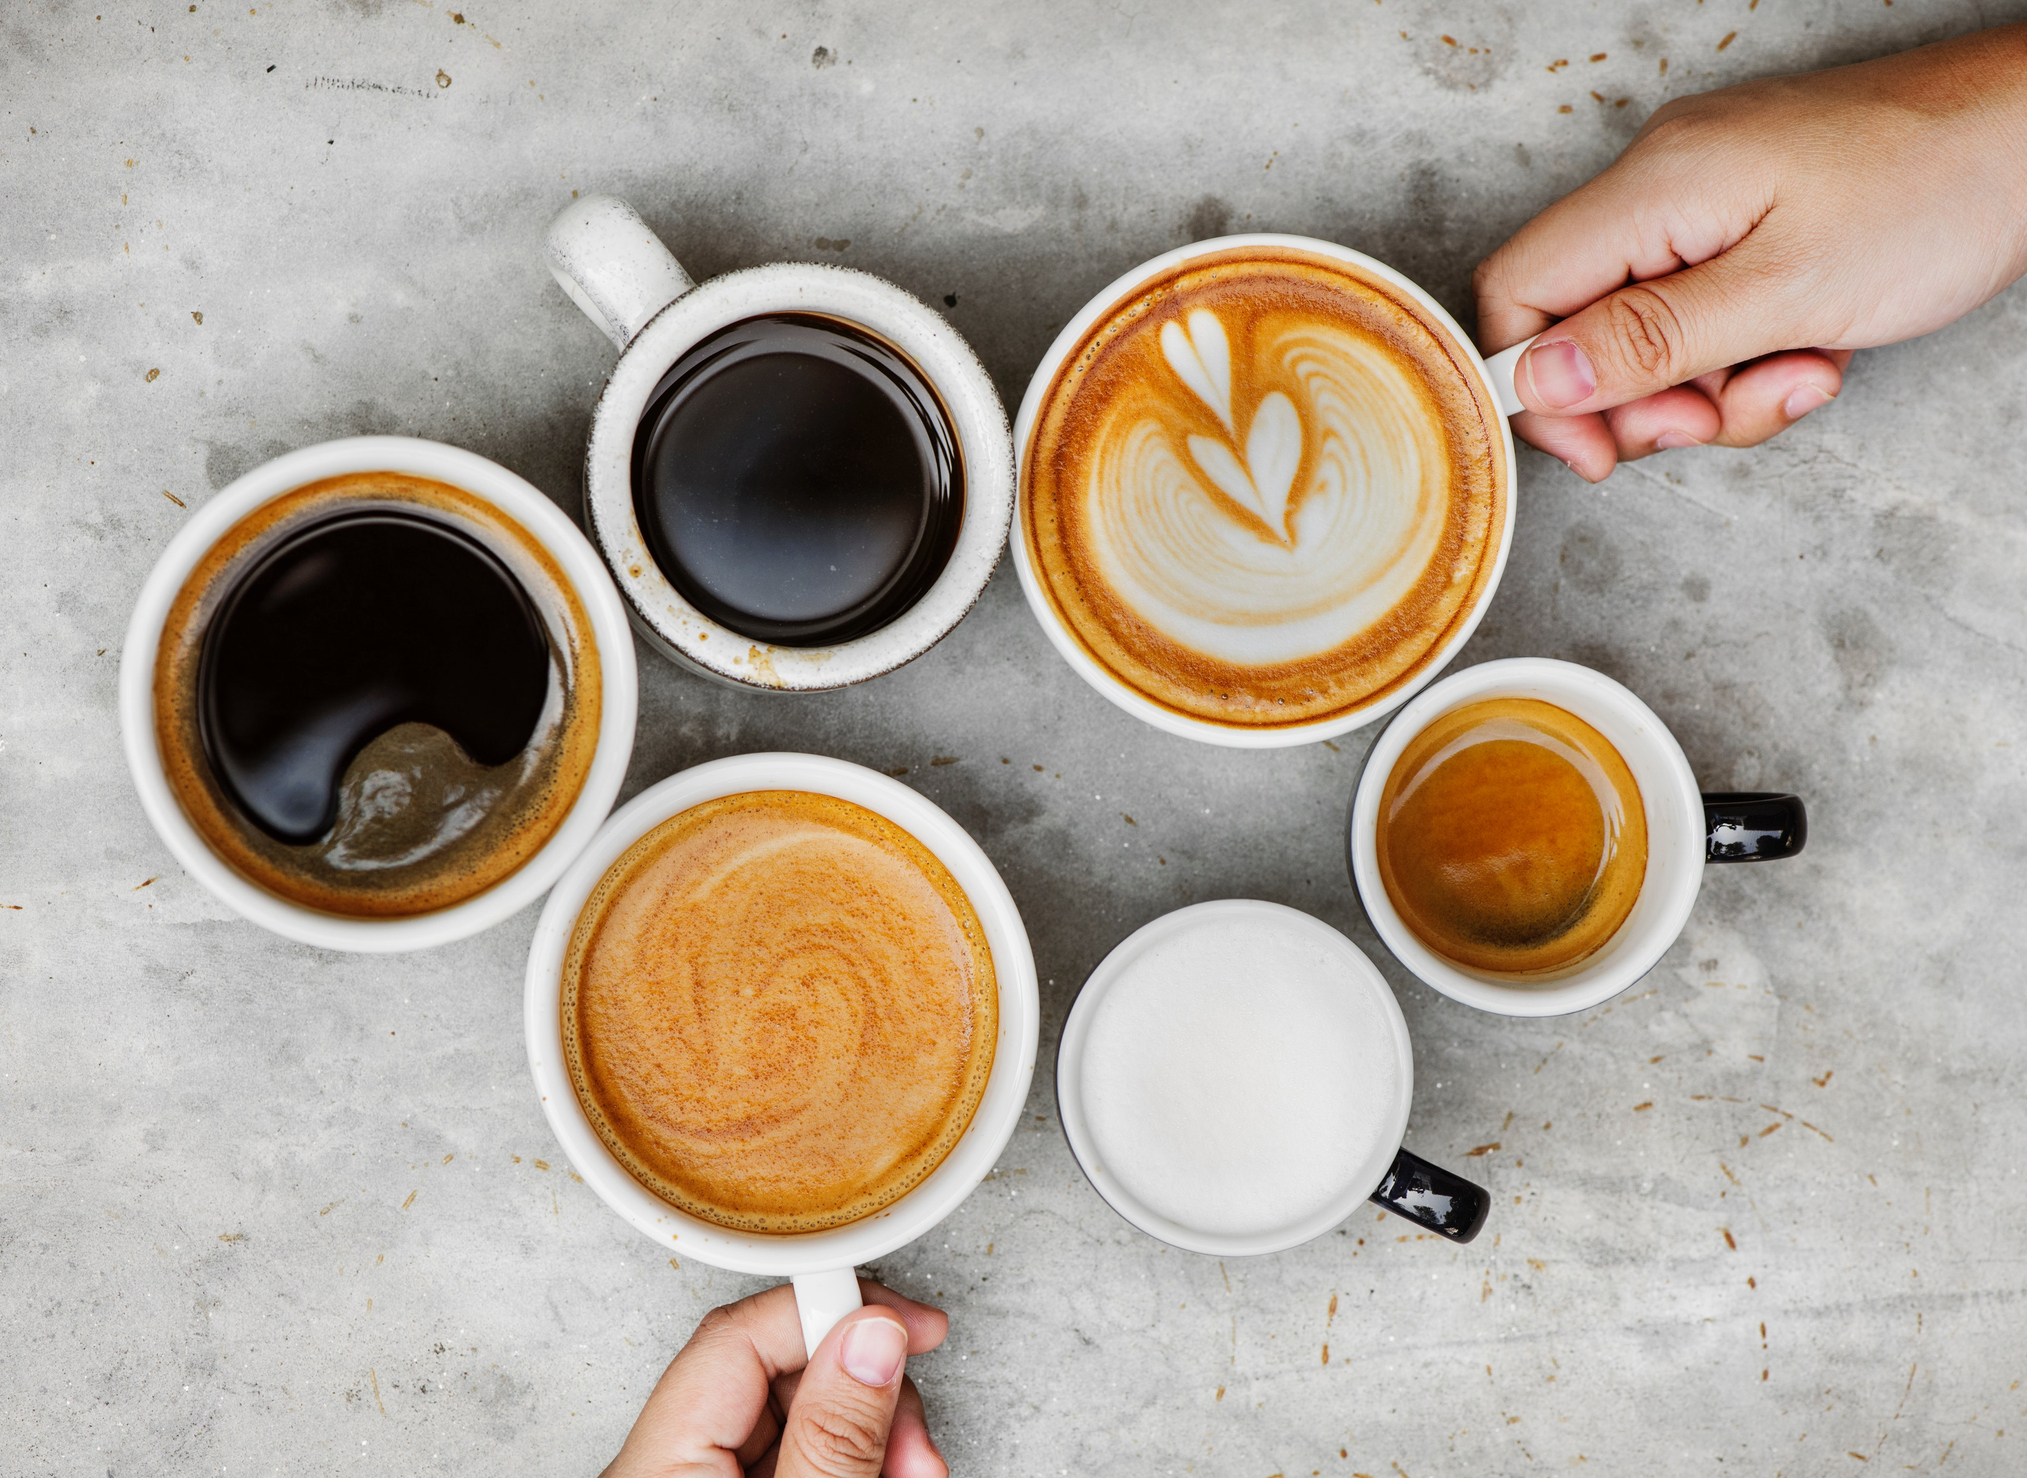 Napi két-három csésze kávé után így reagál a tested: ezt mondják a kutatók  - Blikk Rúzs